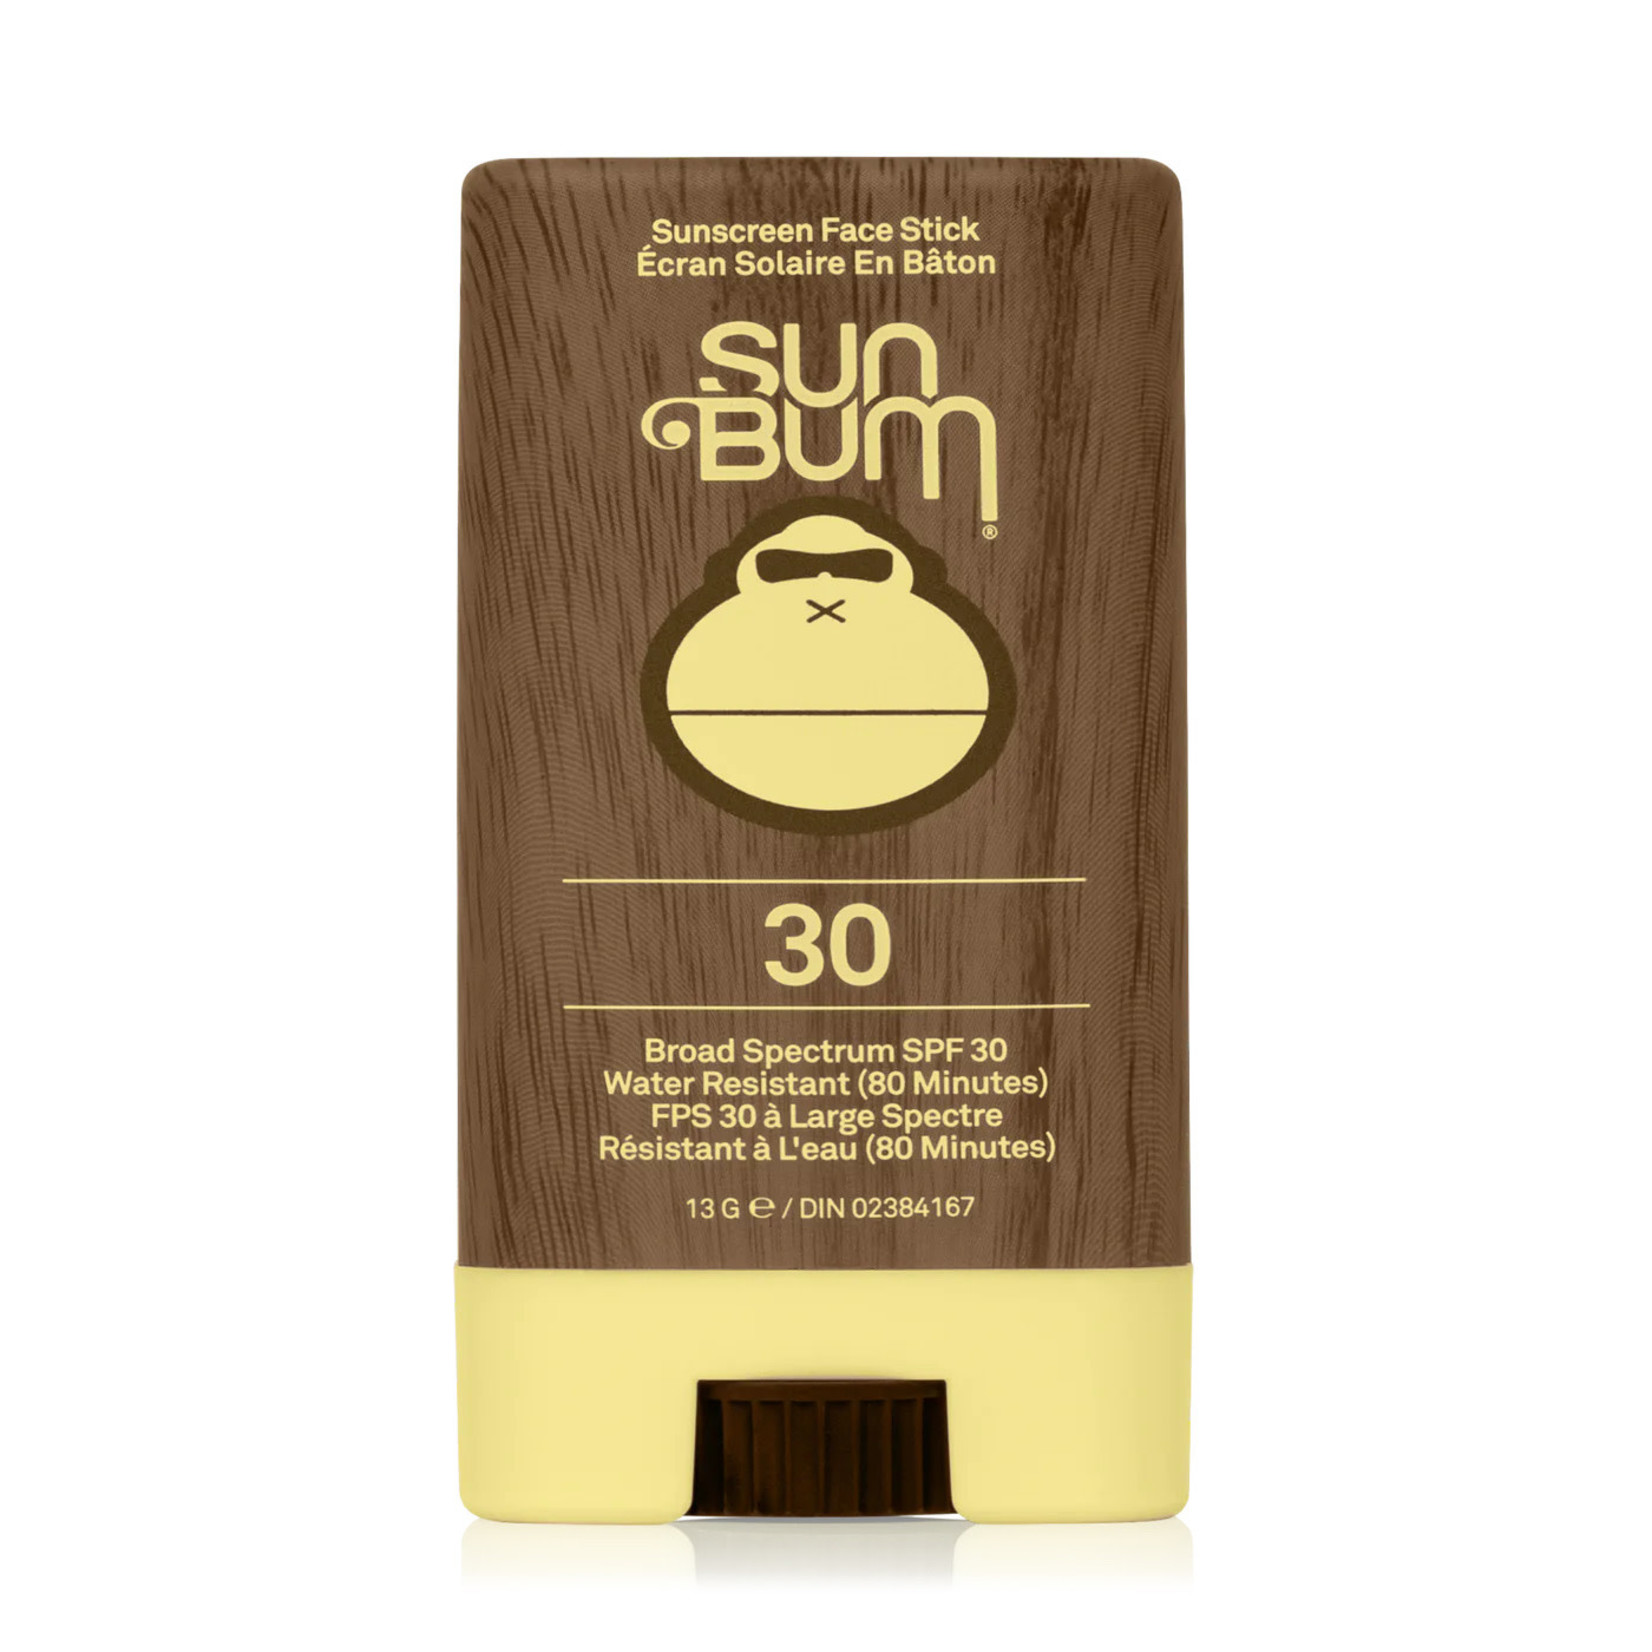 Sun Bum Sun Bum - Original SPF 30 Face Stick